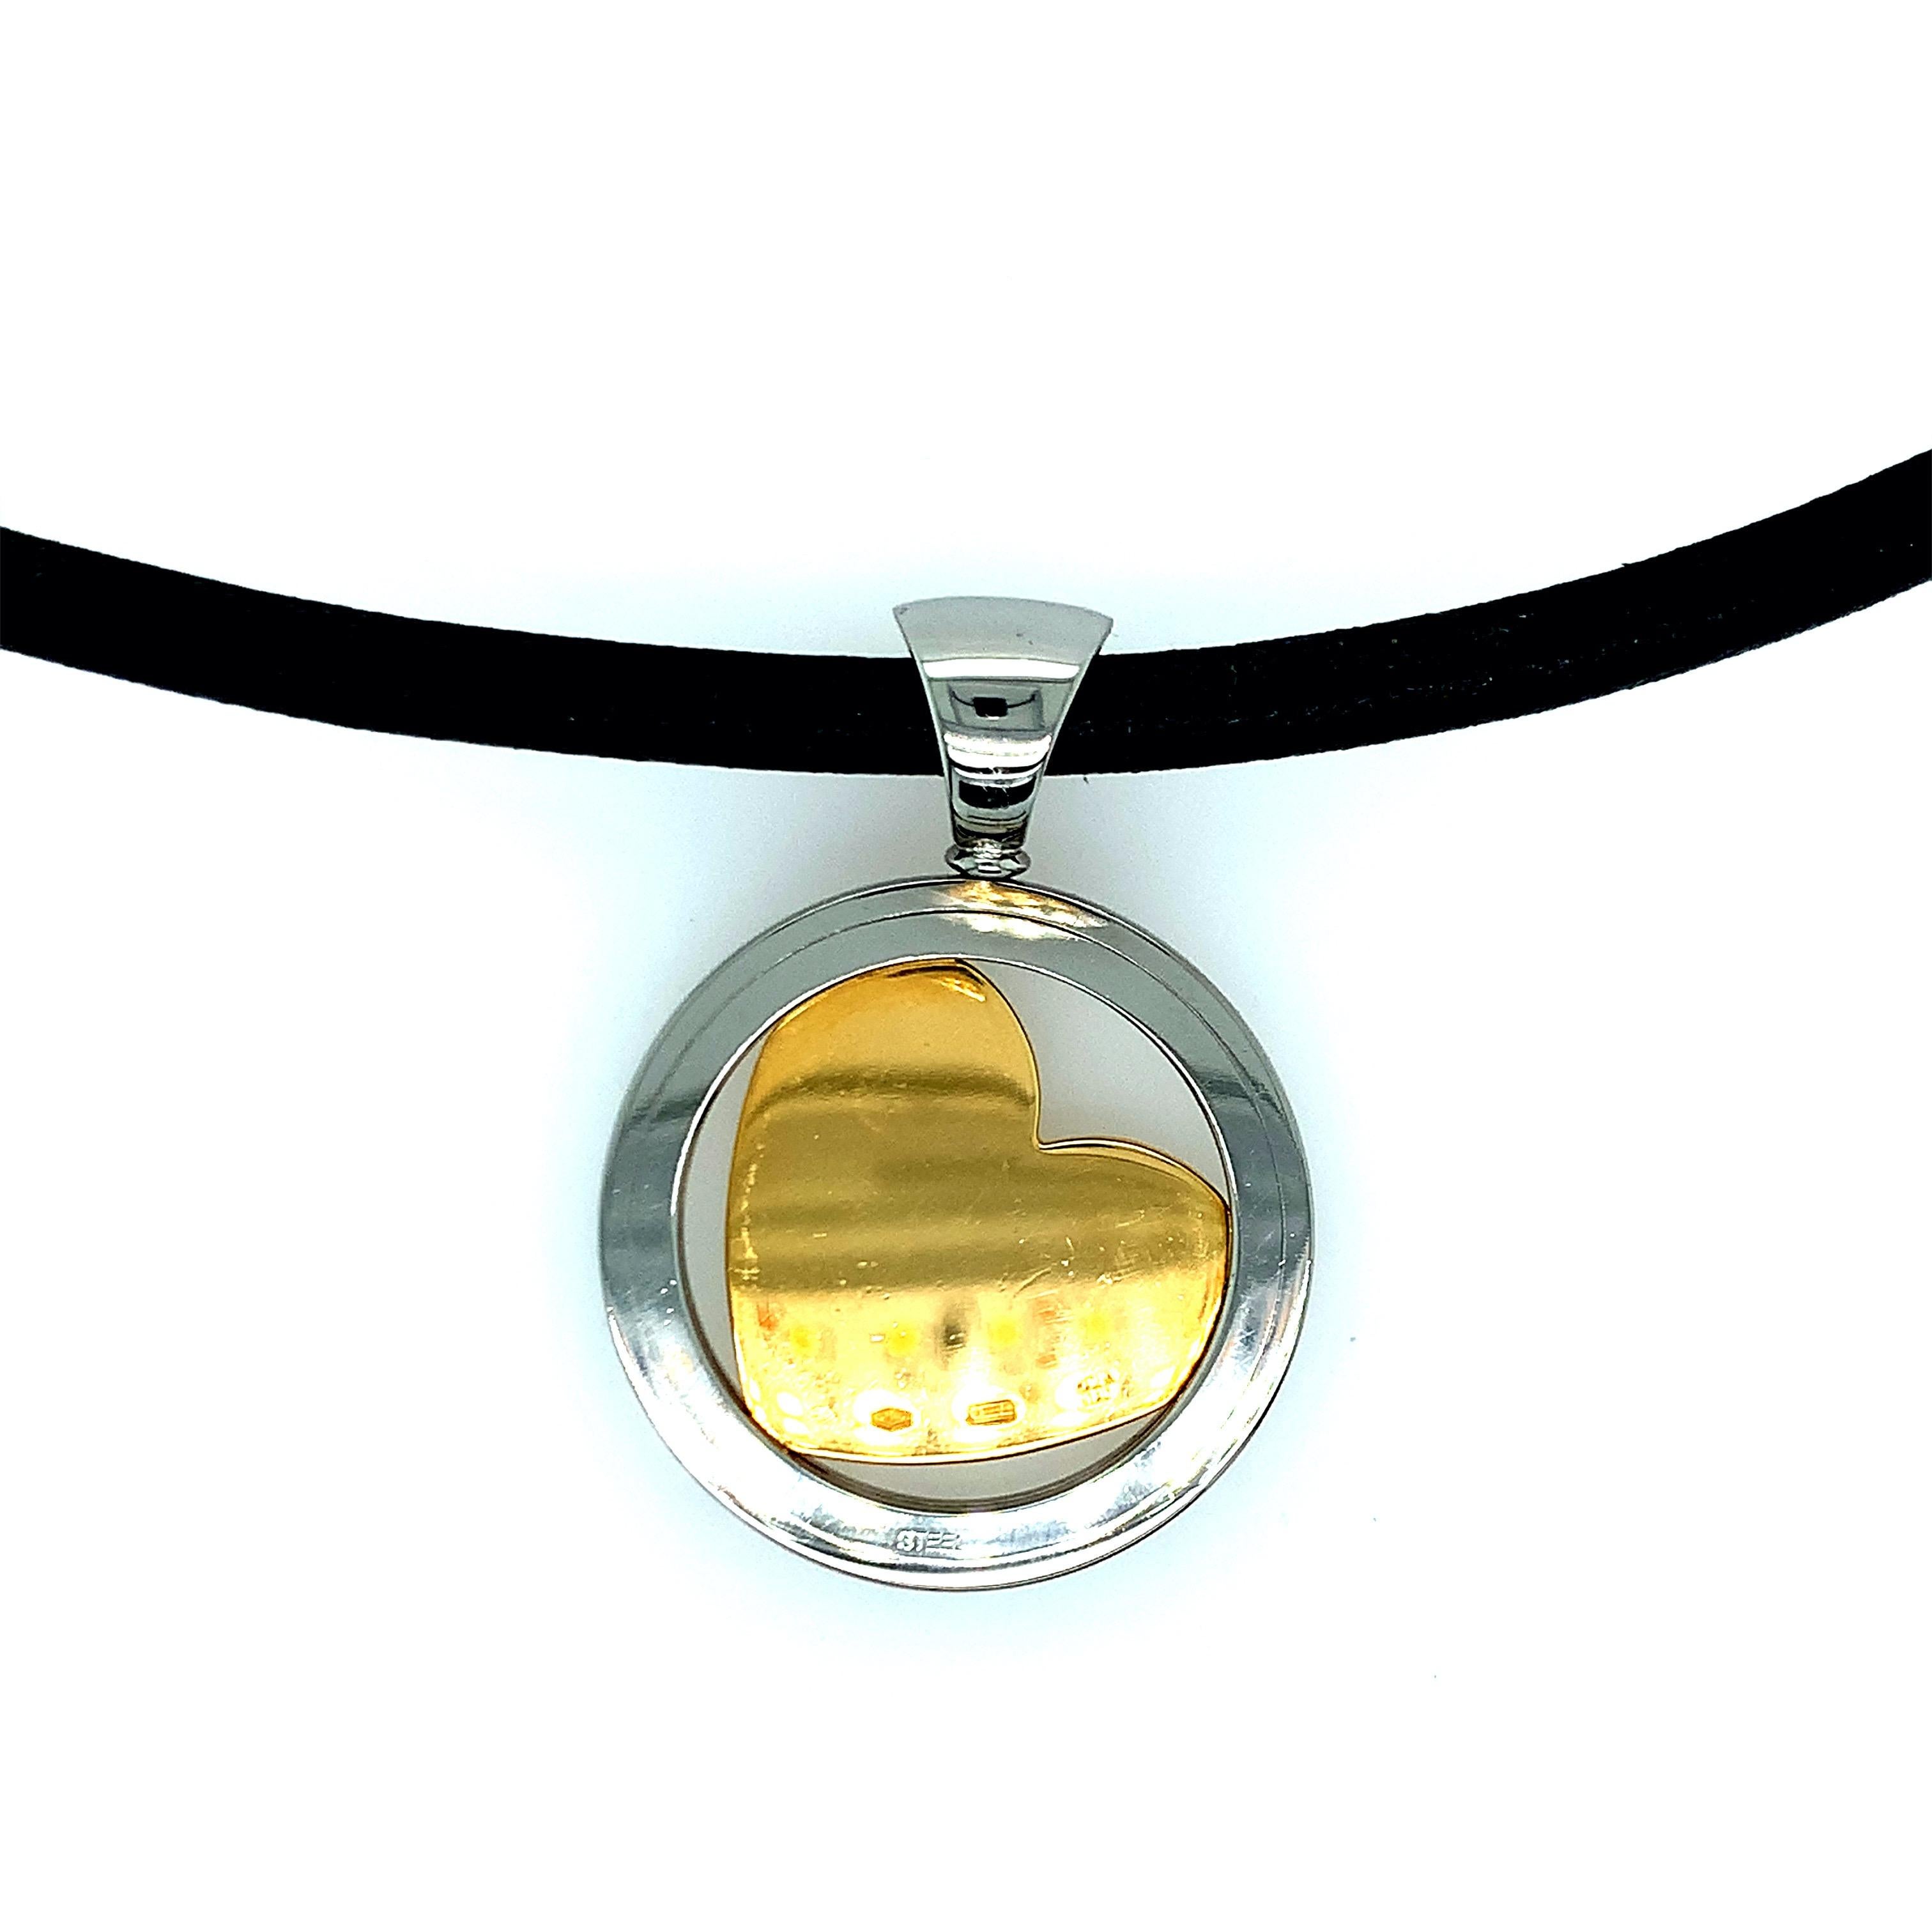 Diese von Bvlgari entworfene Halskette zeigt ein goldenes Herz in einem kreisförmigen Stahl. Im Inneren des goldenen Herzens befinden sich Diamanten in Form eines weiteren Herzens. Gesamtgewicht: 29.4 Gramm. Länge der Halskette: 17 Zoll. Maße des